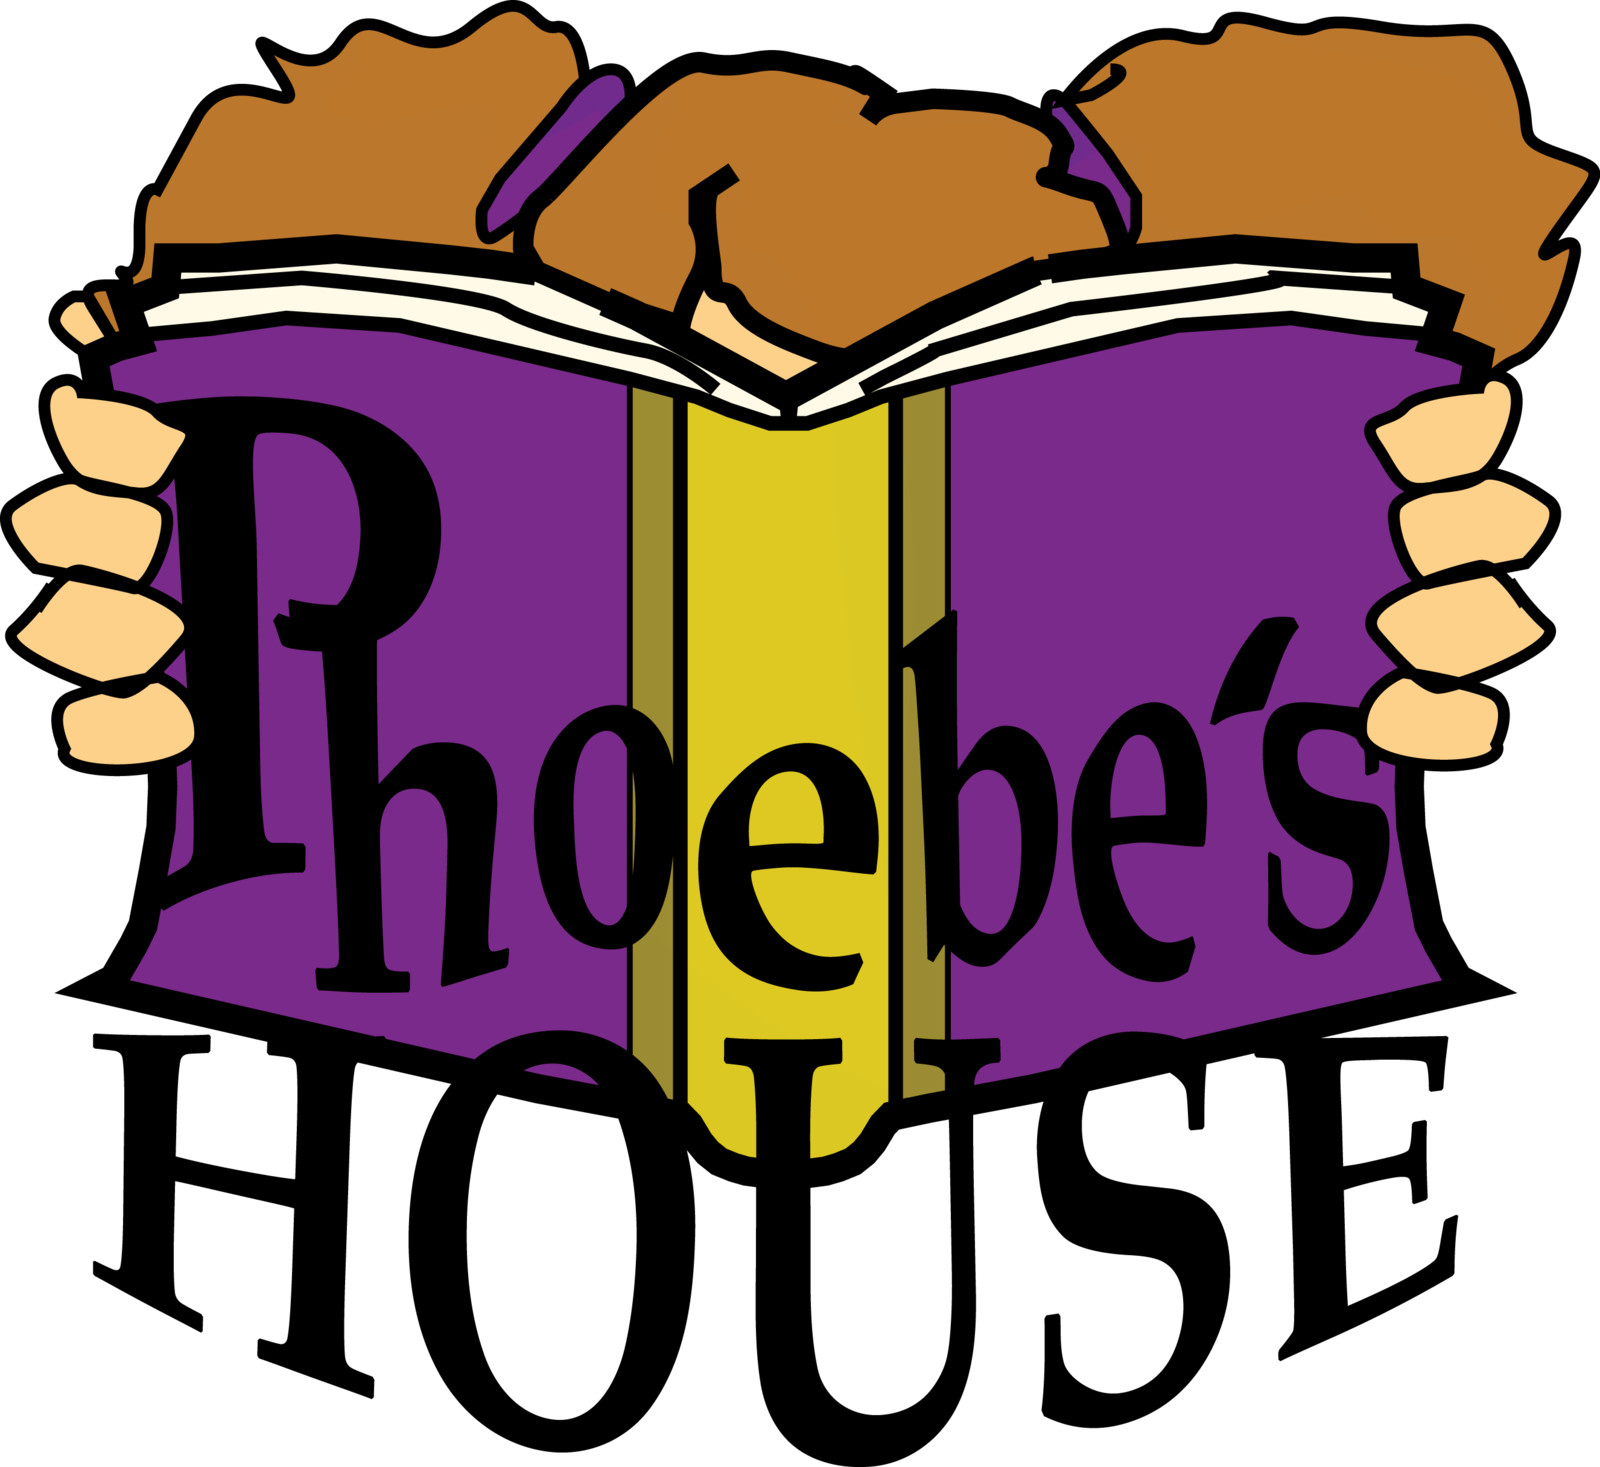 Phoebe’s House Publishing Company Mark